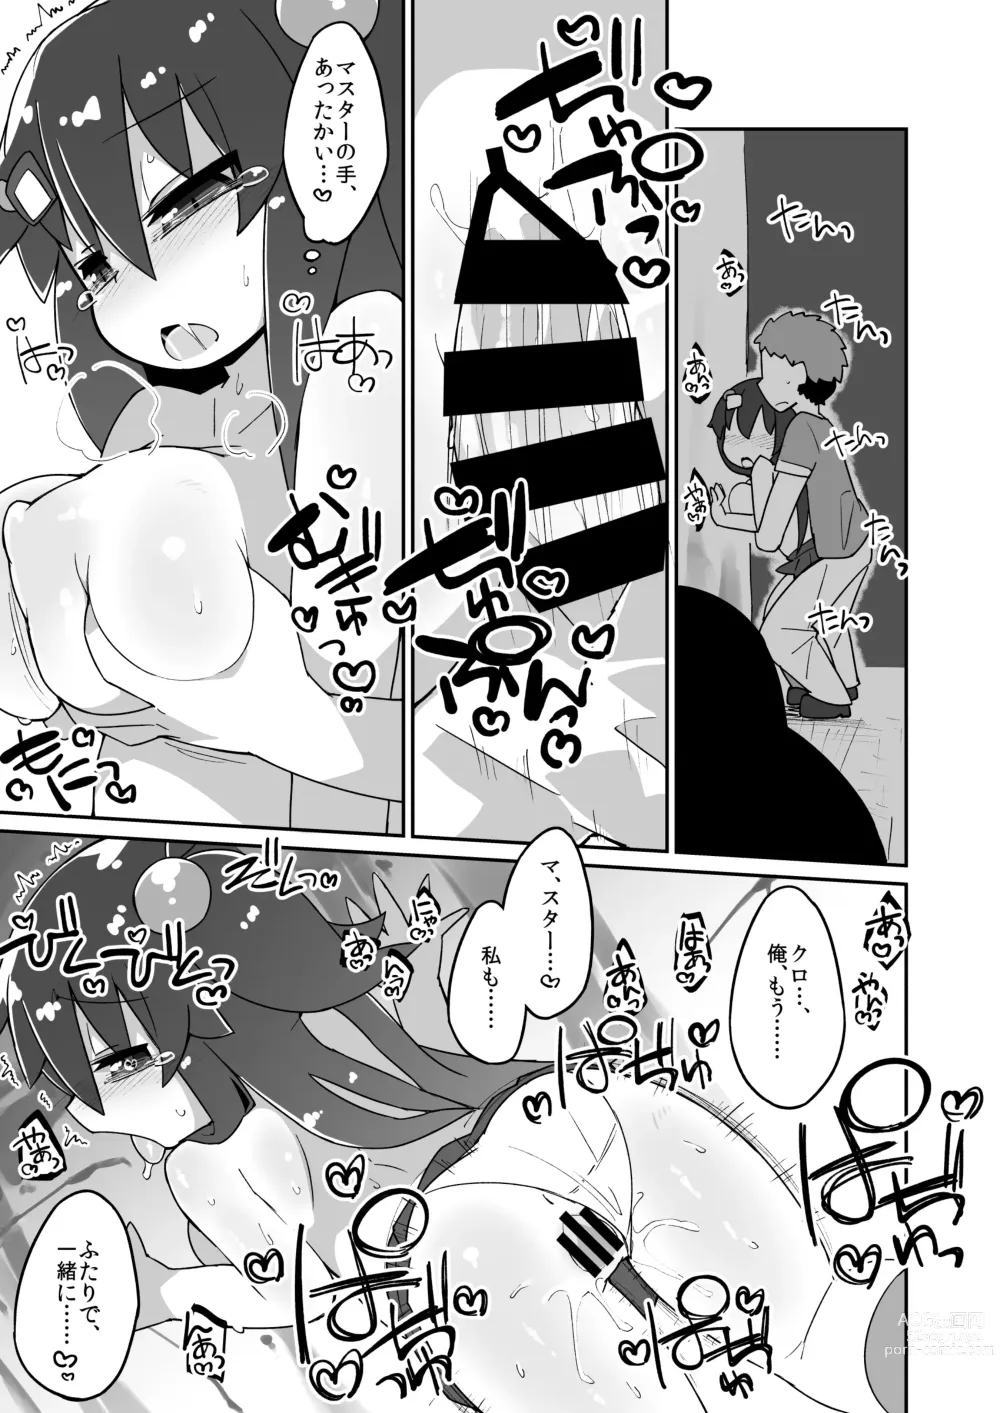 Page 3 of doujinshi Kuro Ecchi Manga